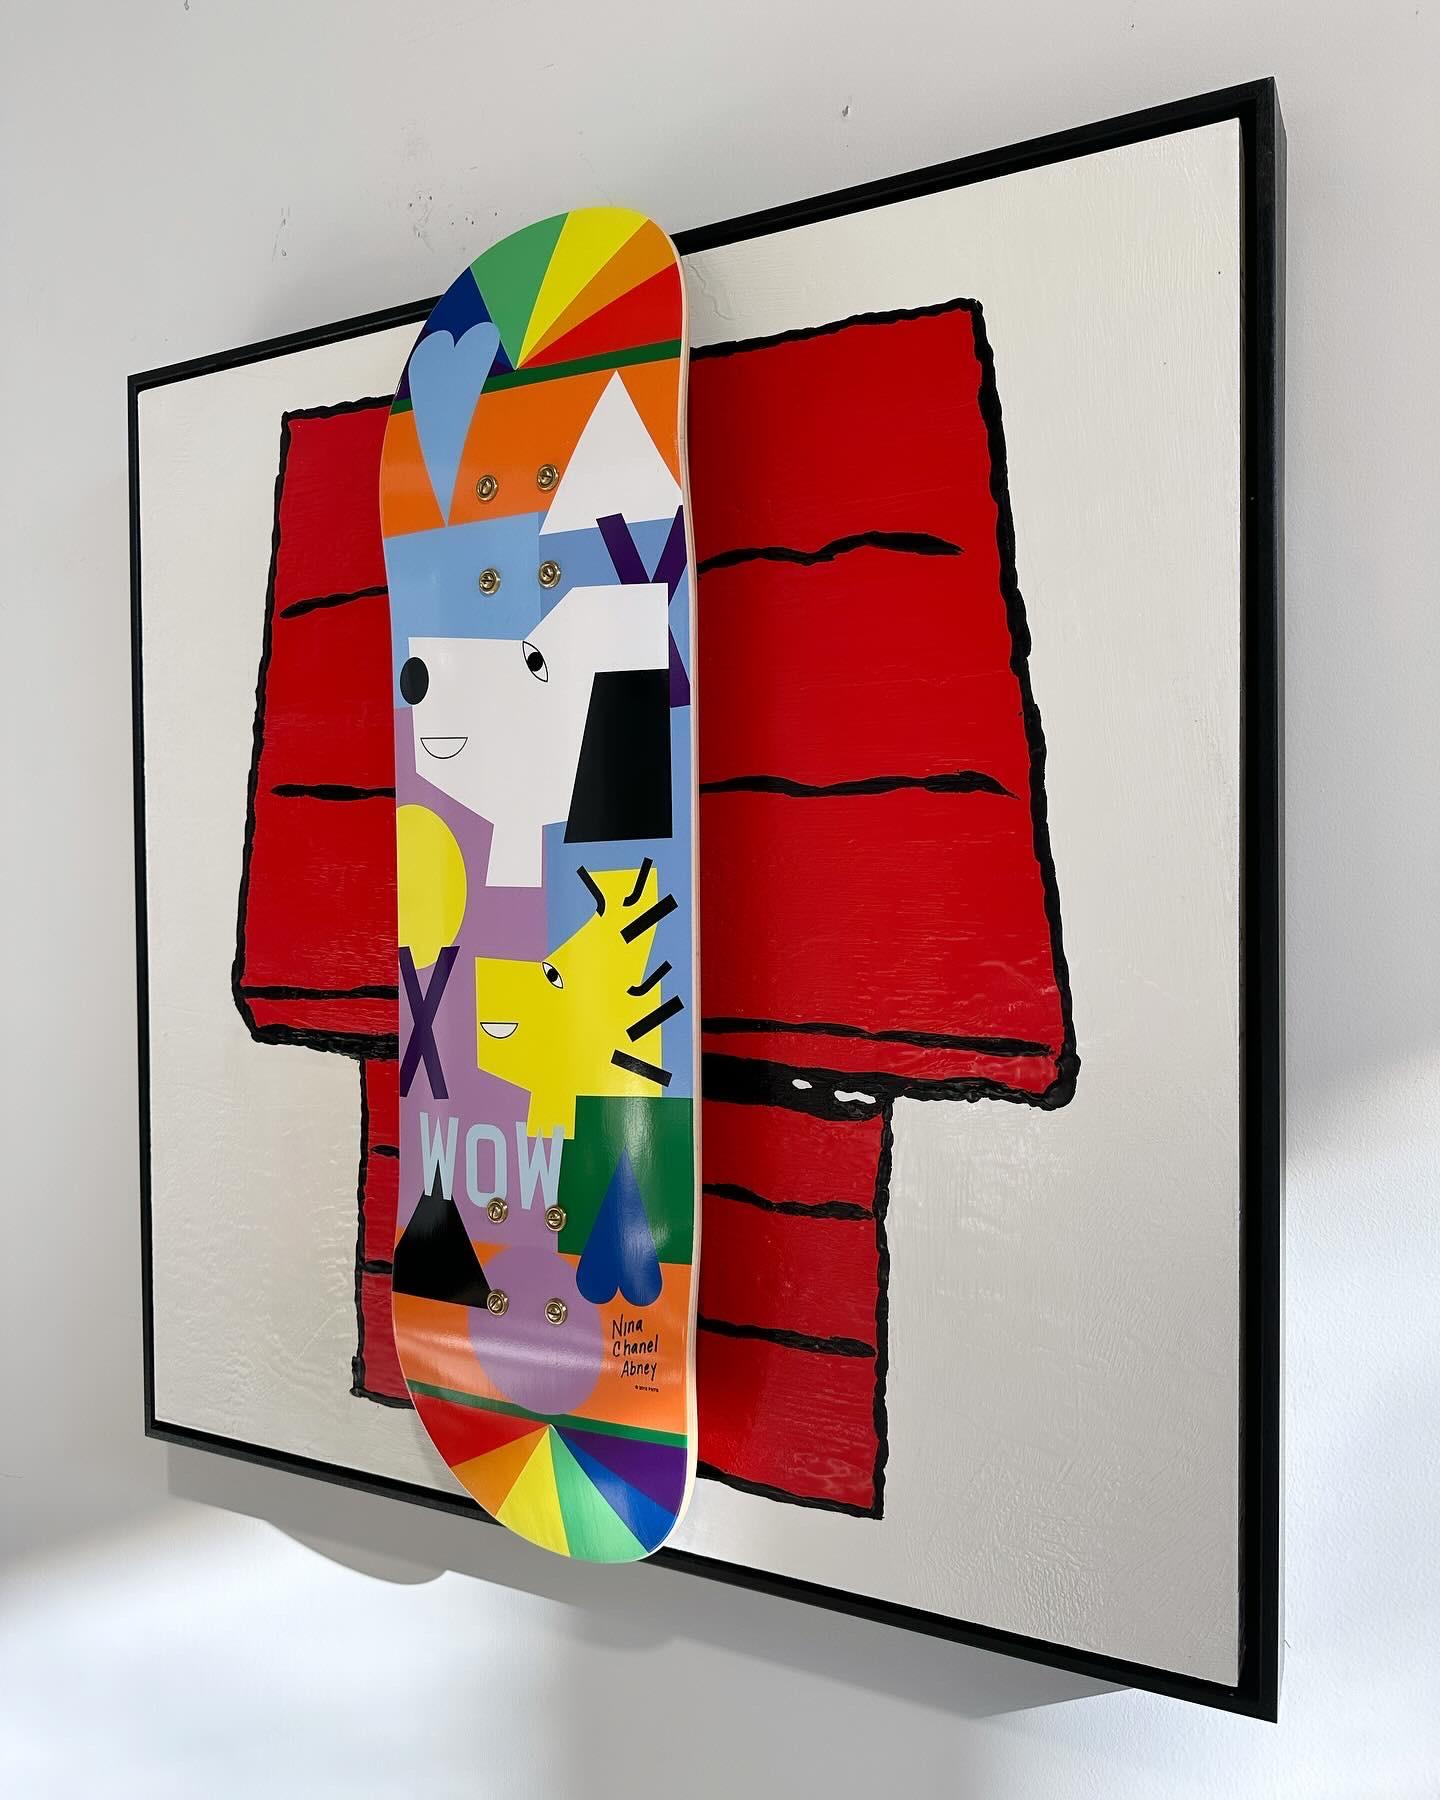 In der Serie Deck. Encaustic und Nina Chanel Abney Peanuts Skate Deck schwimmend auf Brett montiert.

Kunst Abmessungen: 30 x 30 H Zoll und gerahmt Abmessungen: 31 W x 31 H Zoll. 

Über das Deck  Dieses Abney-Kunstwerk wurde in Zusammenarbeit mit